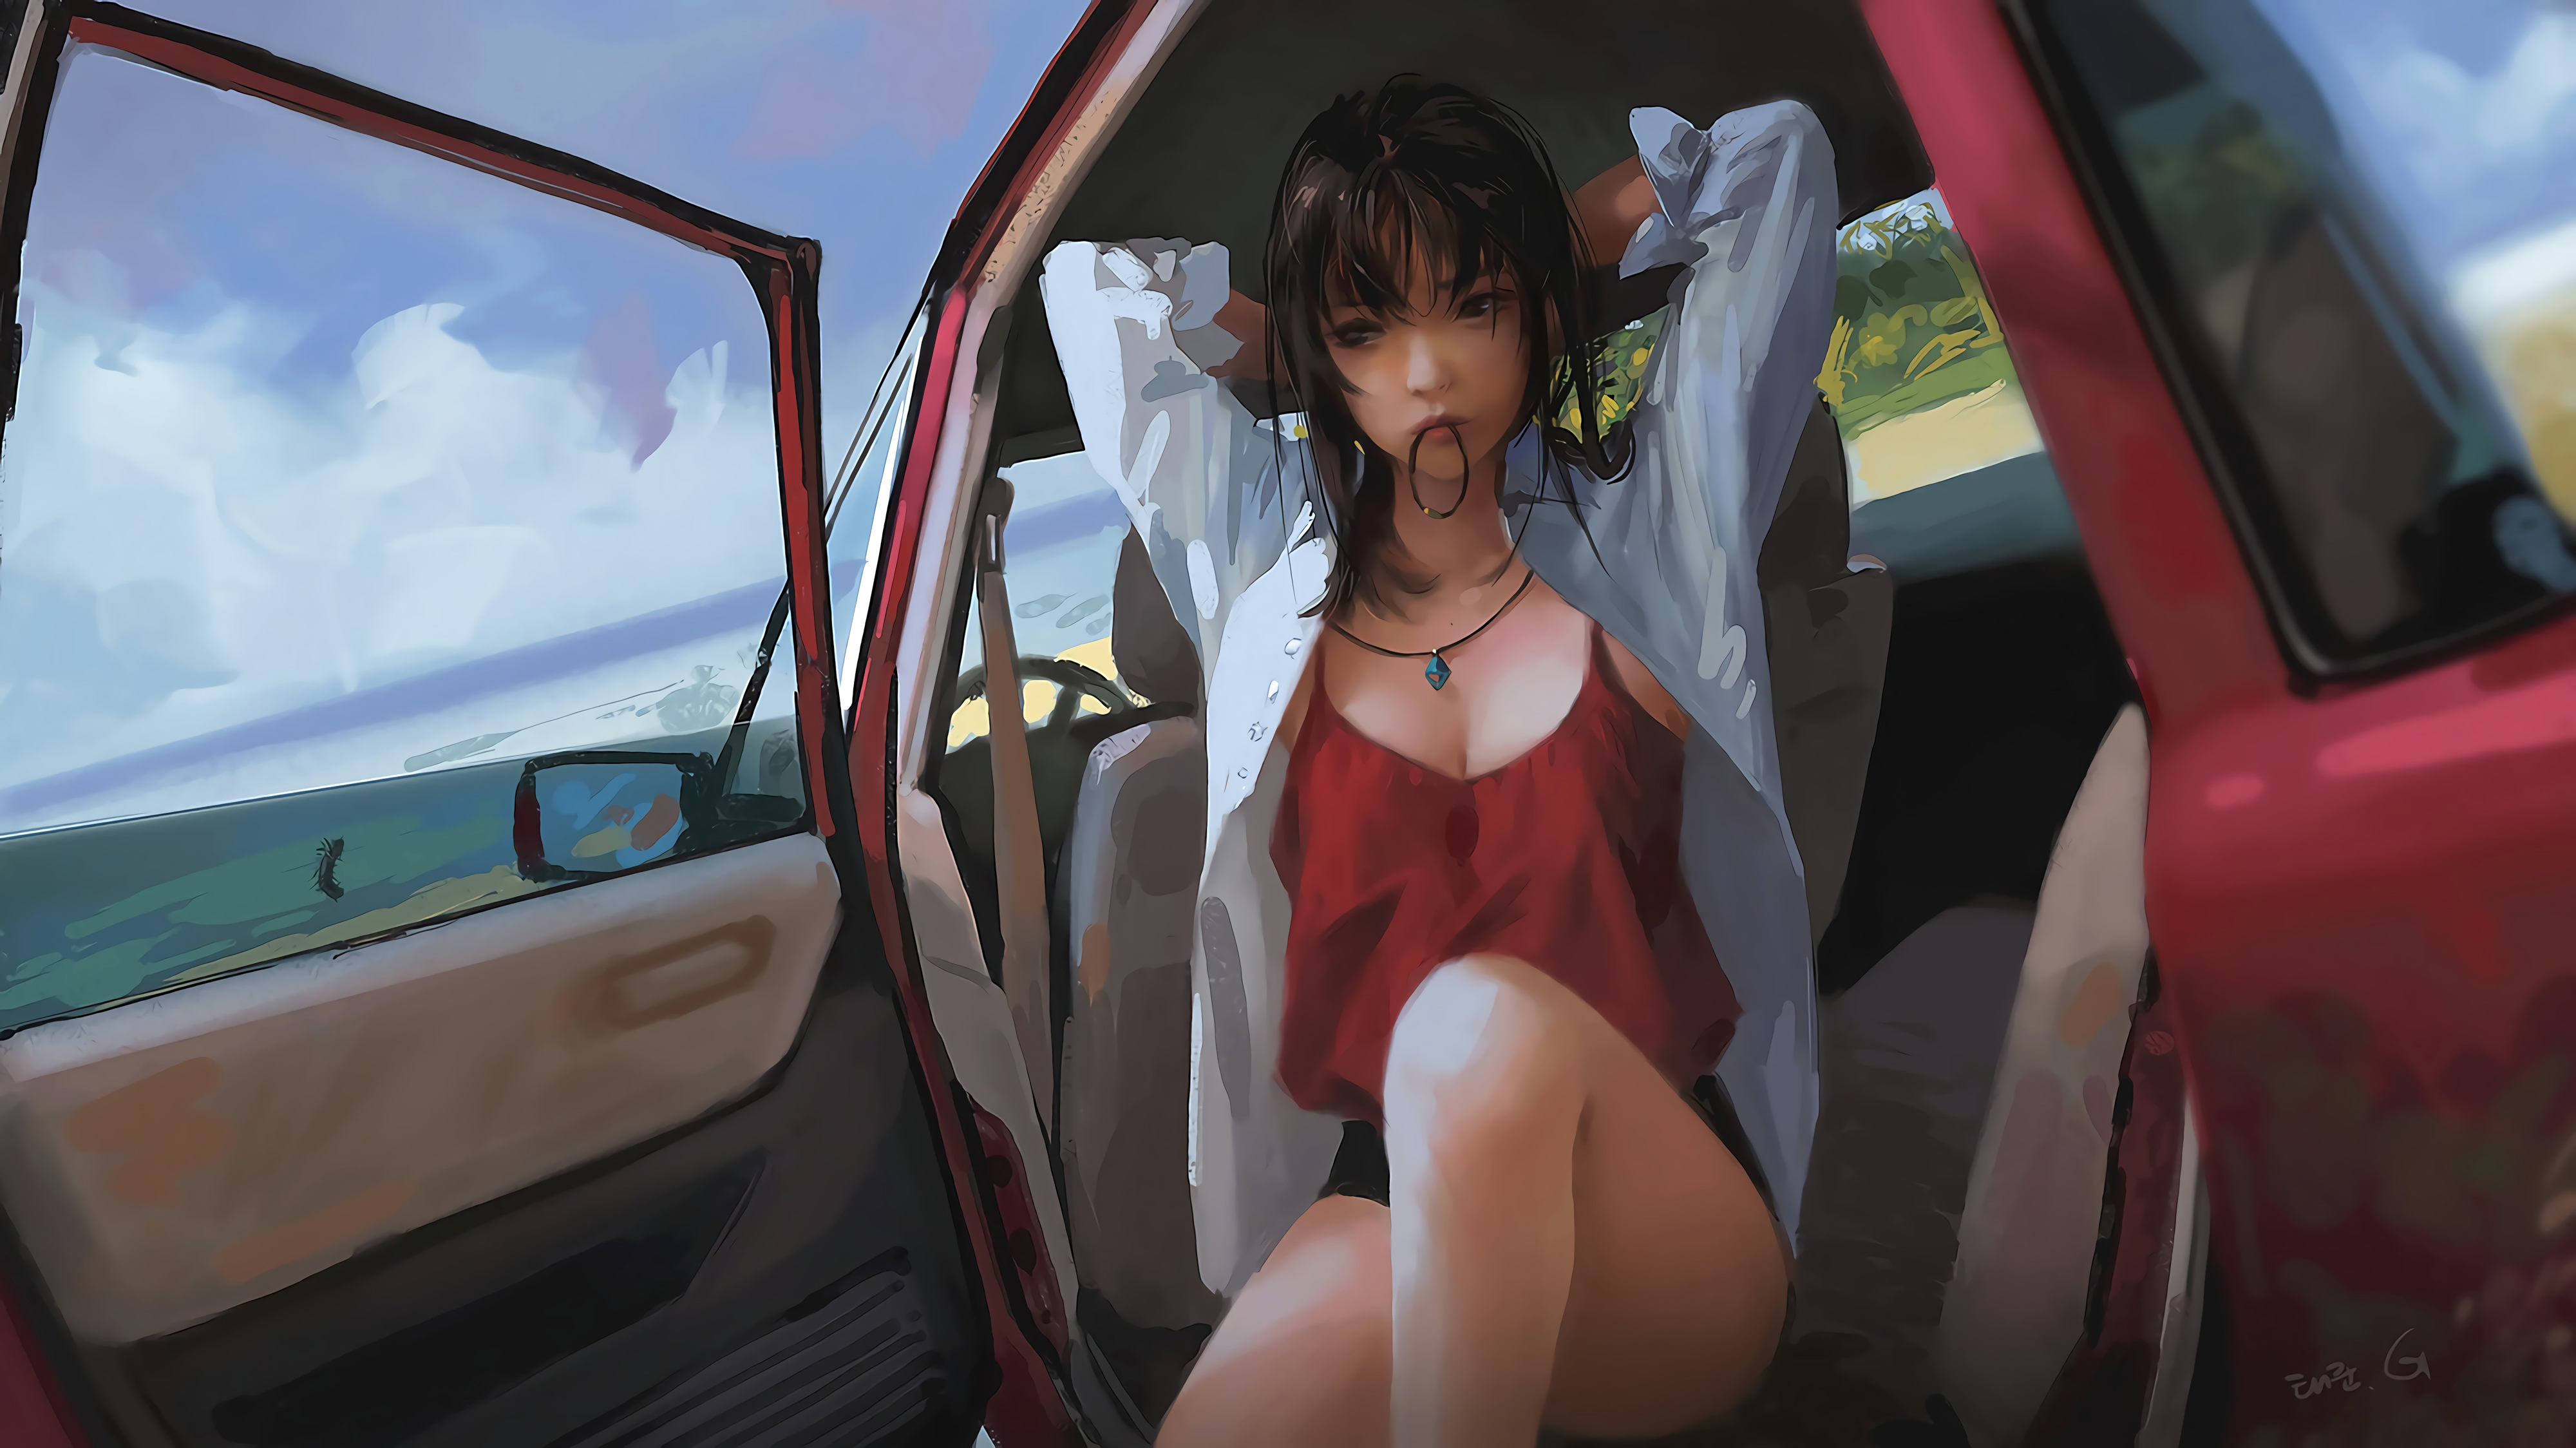 General 4000x2248 digital art artwork women brunette red shirt thighs beach car Taejune Kim long hair illustration anime girls anime